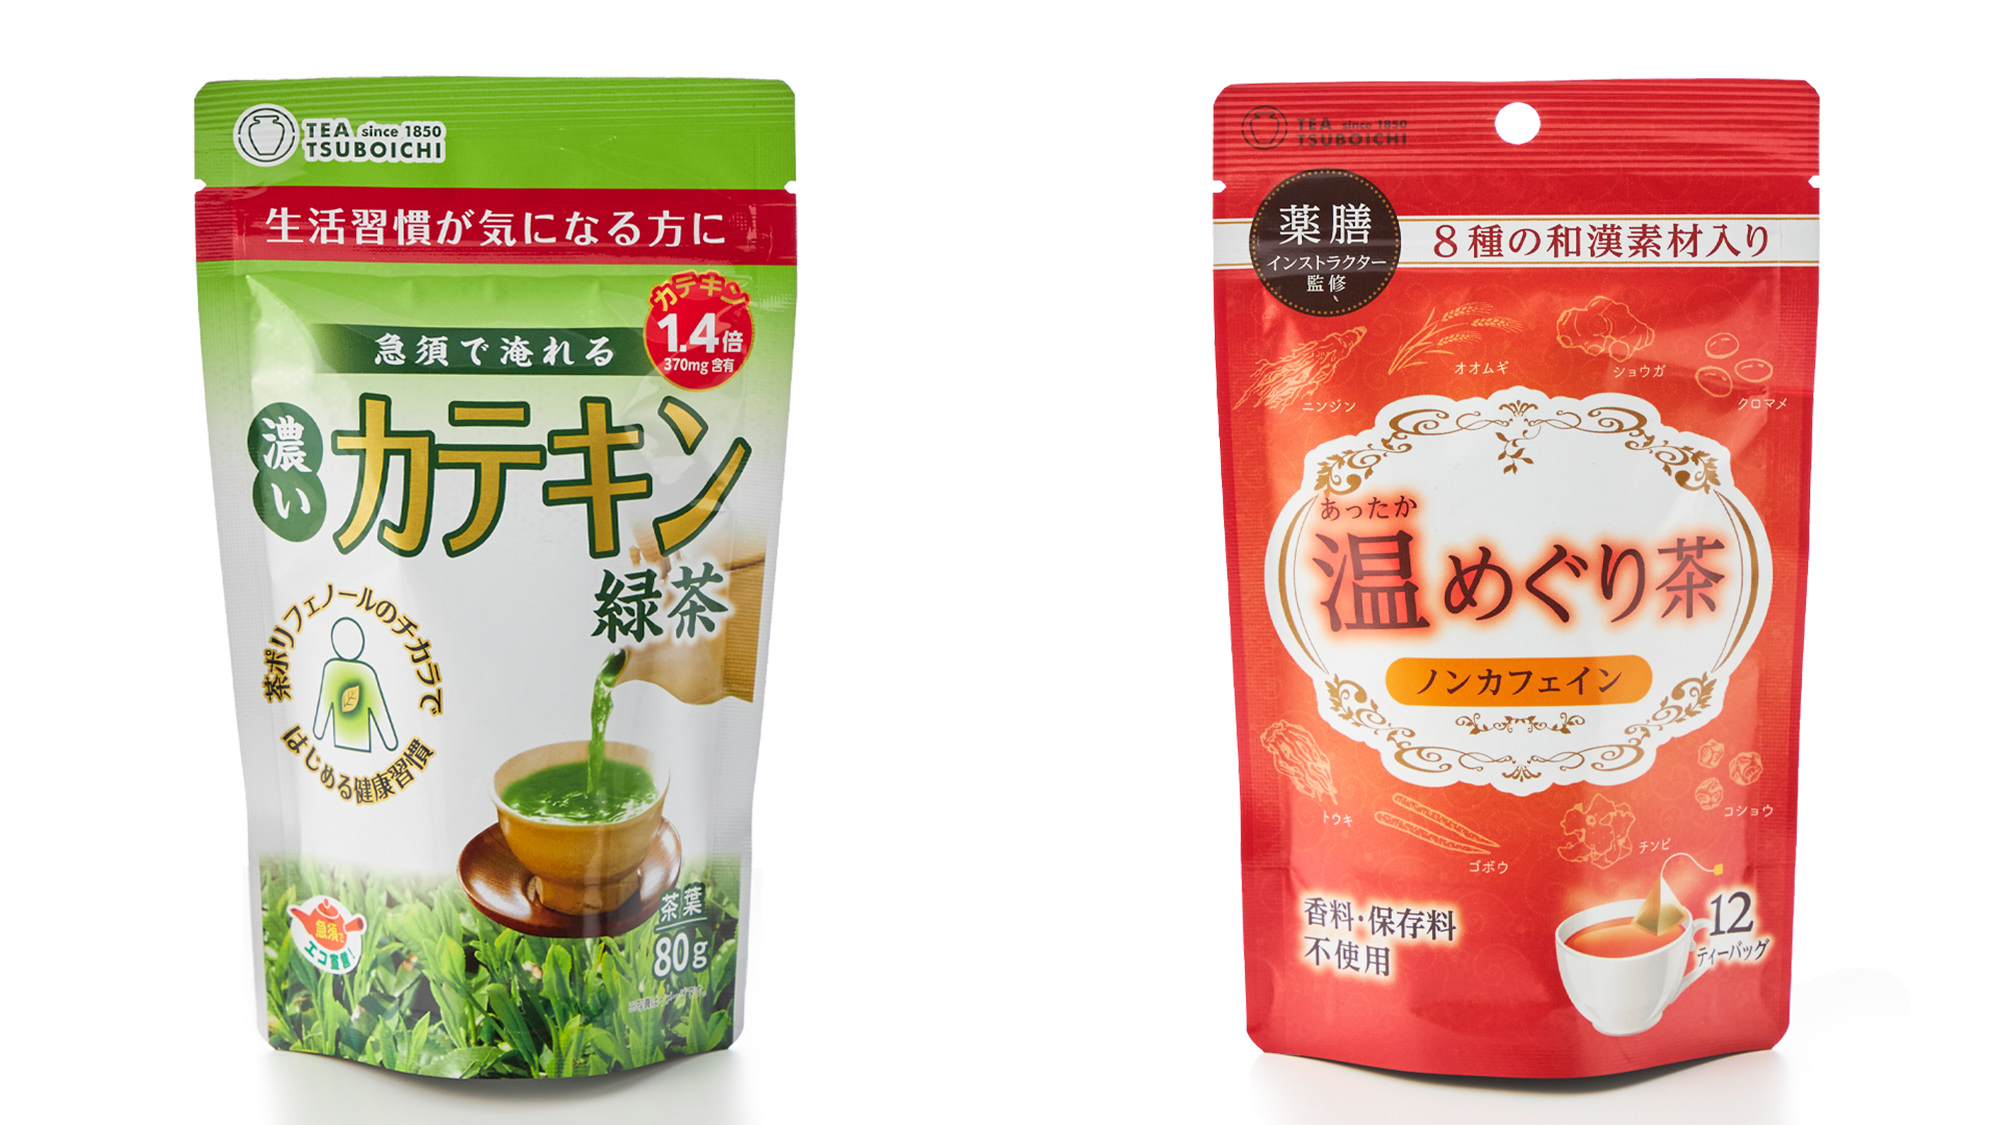 『東京発』沖縄そば専門店の出汁ソムリエが作る
「沖縄そばのセット」と「オリジナルの調味料」が発売